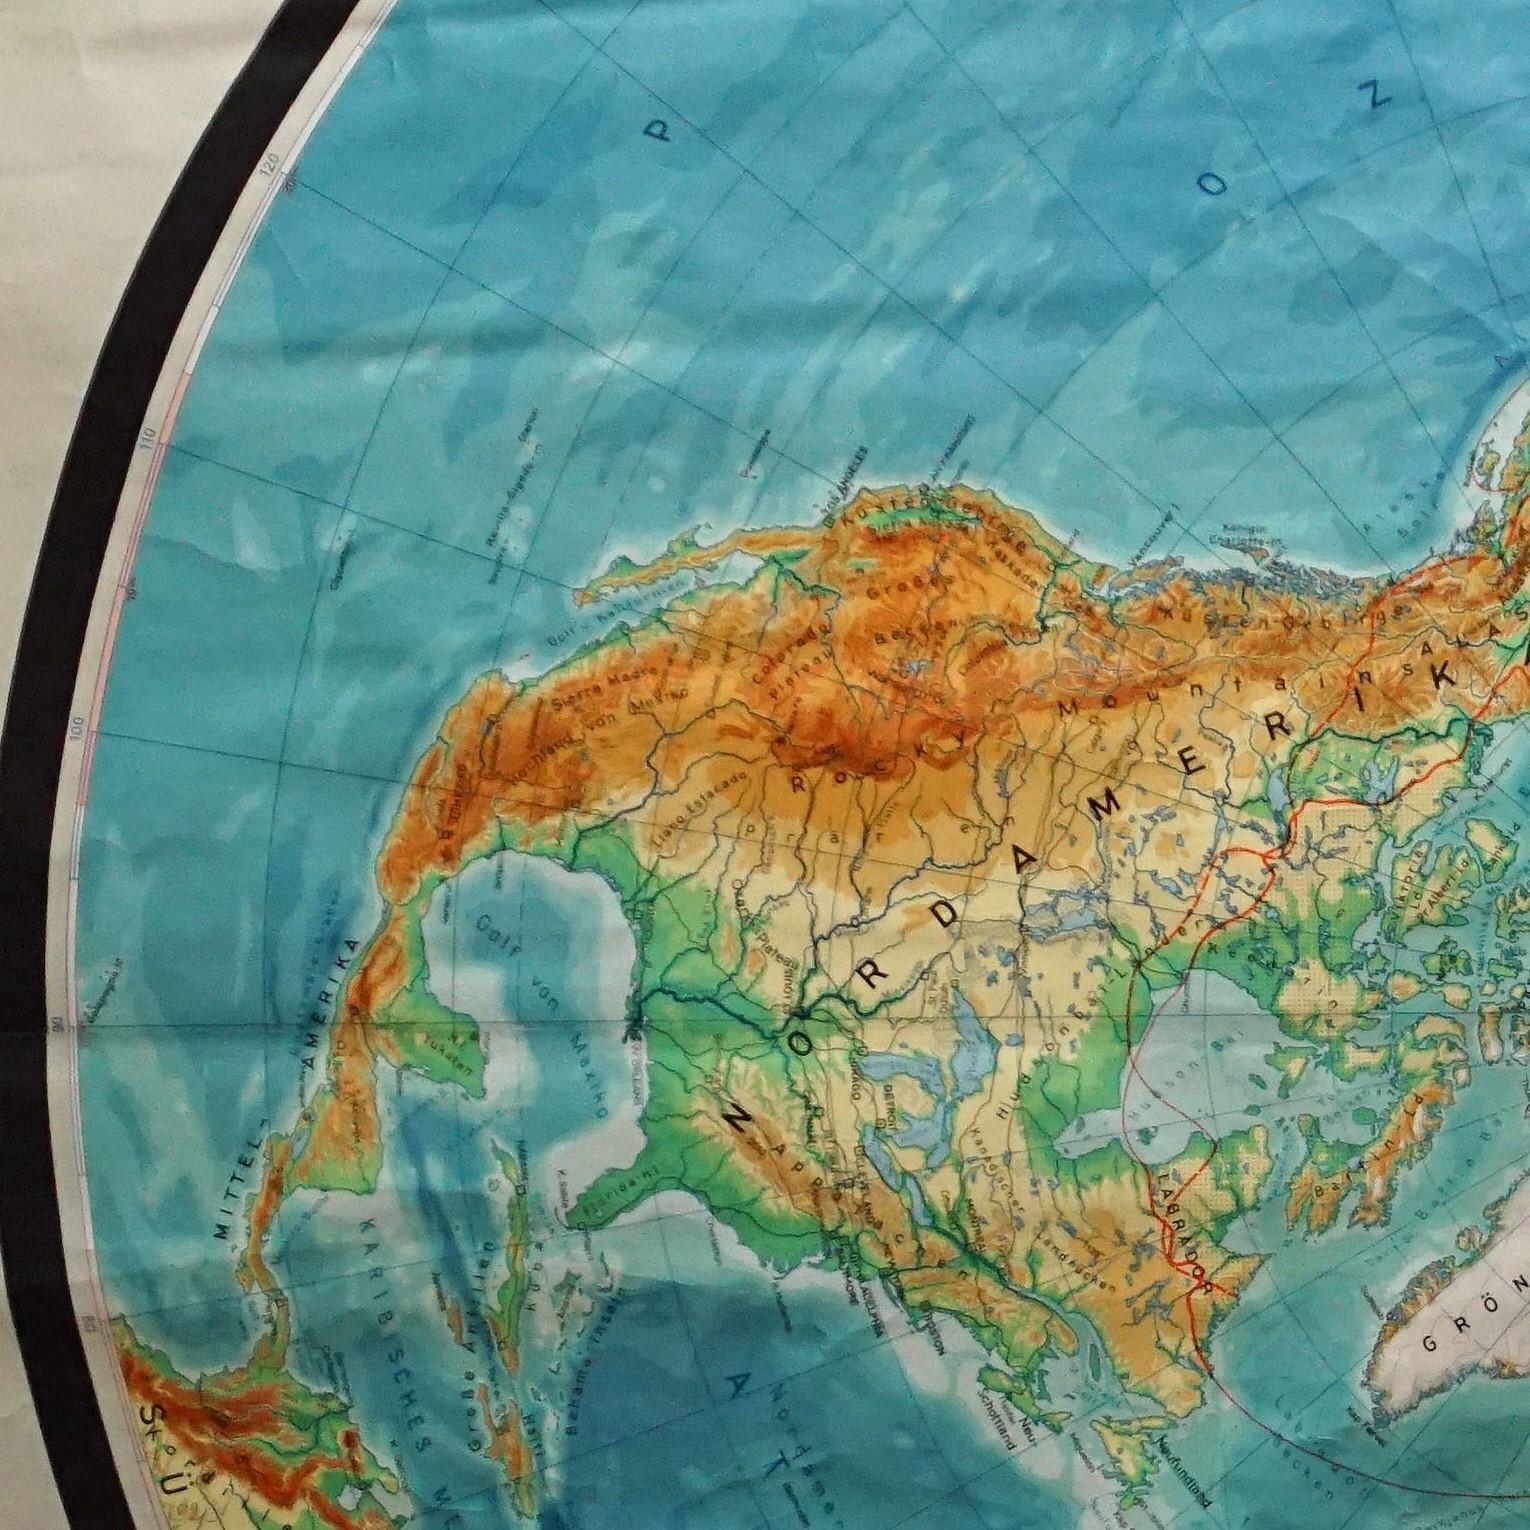 Une superbe carte à déplier ou un tableau mural ancien illustrant l'hémisphère nord de la terre. Publié par Prof. Dr. C. Troll, Flemmings Verlag Hamburg. Impression colorée sur papier renforcé par de la toile.
Mesures :
Largeur 170cm (66.93